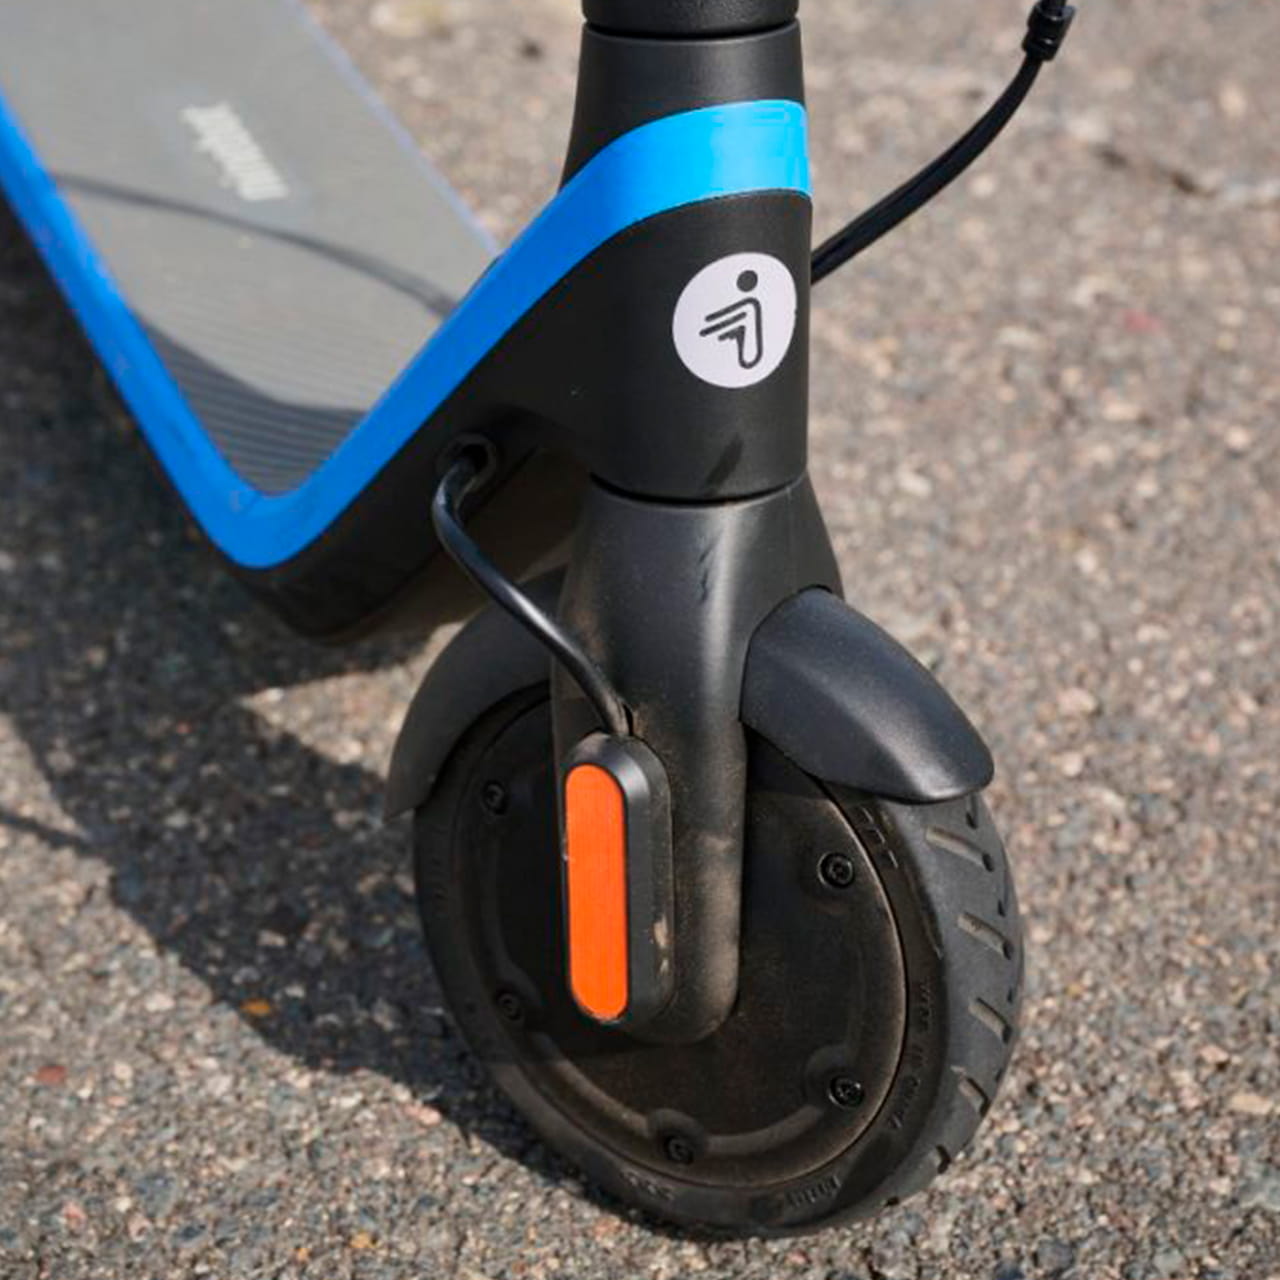 Ninebot KickScooter C2 Pro оснащён бескамерными семидюймовыми шинами, не требующими обслуживания